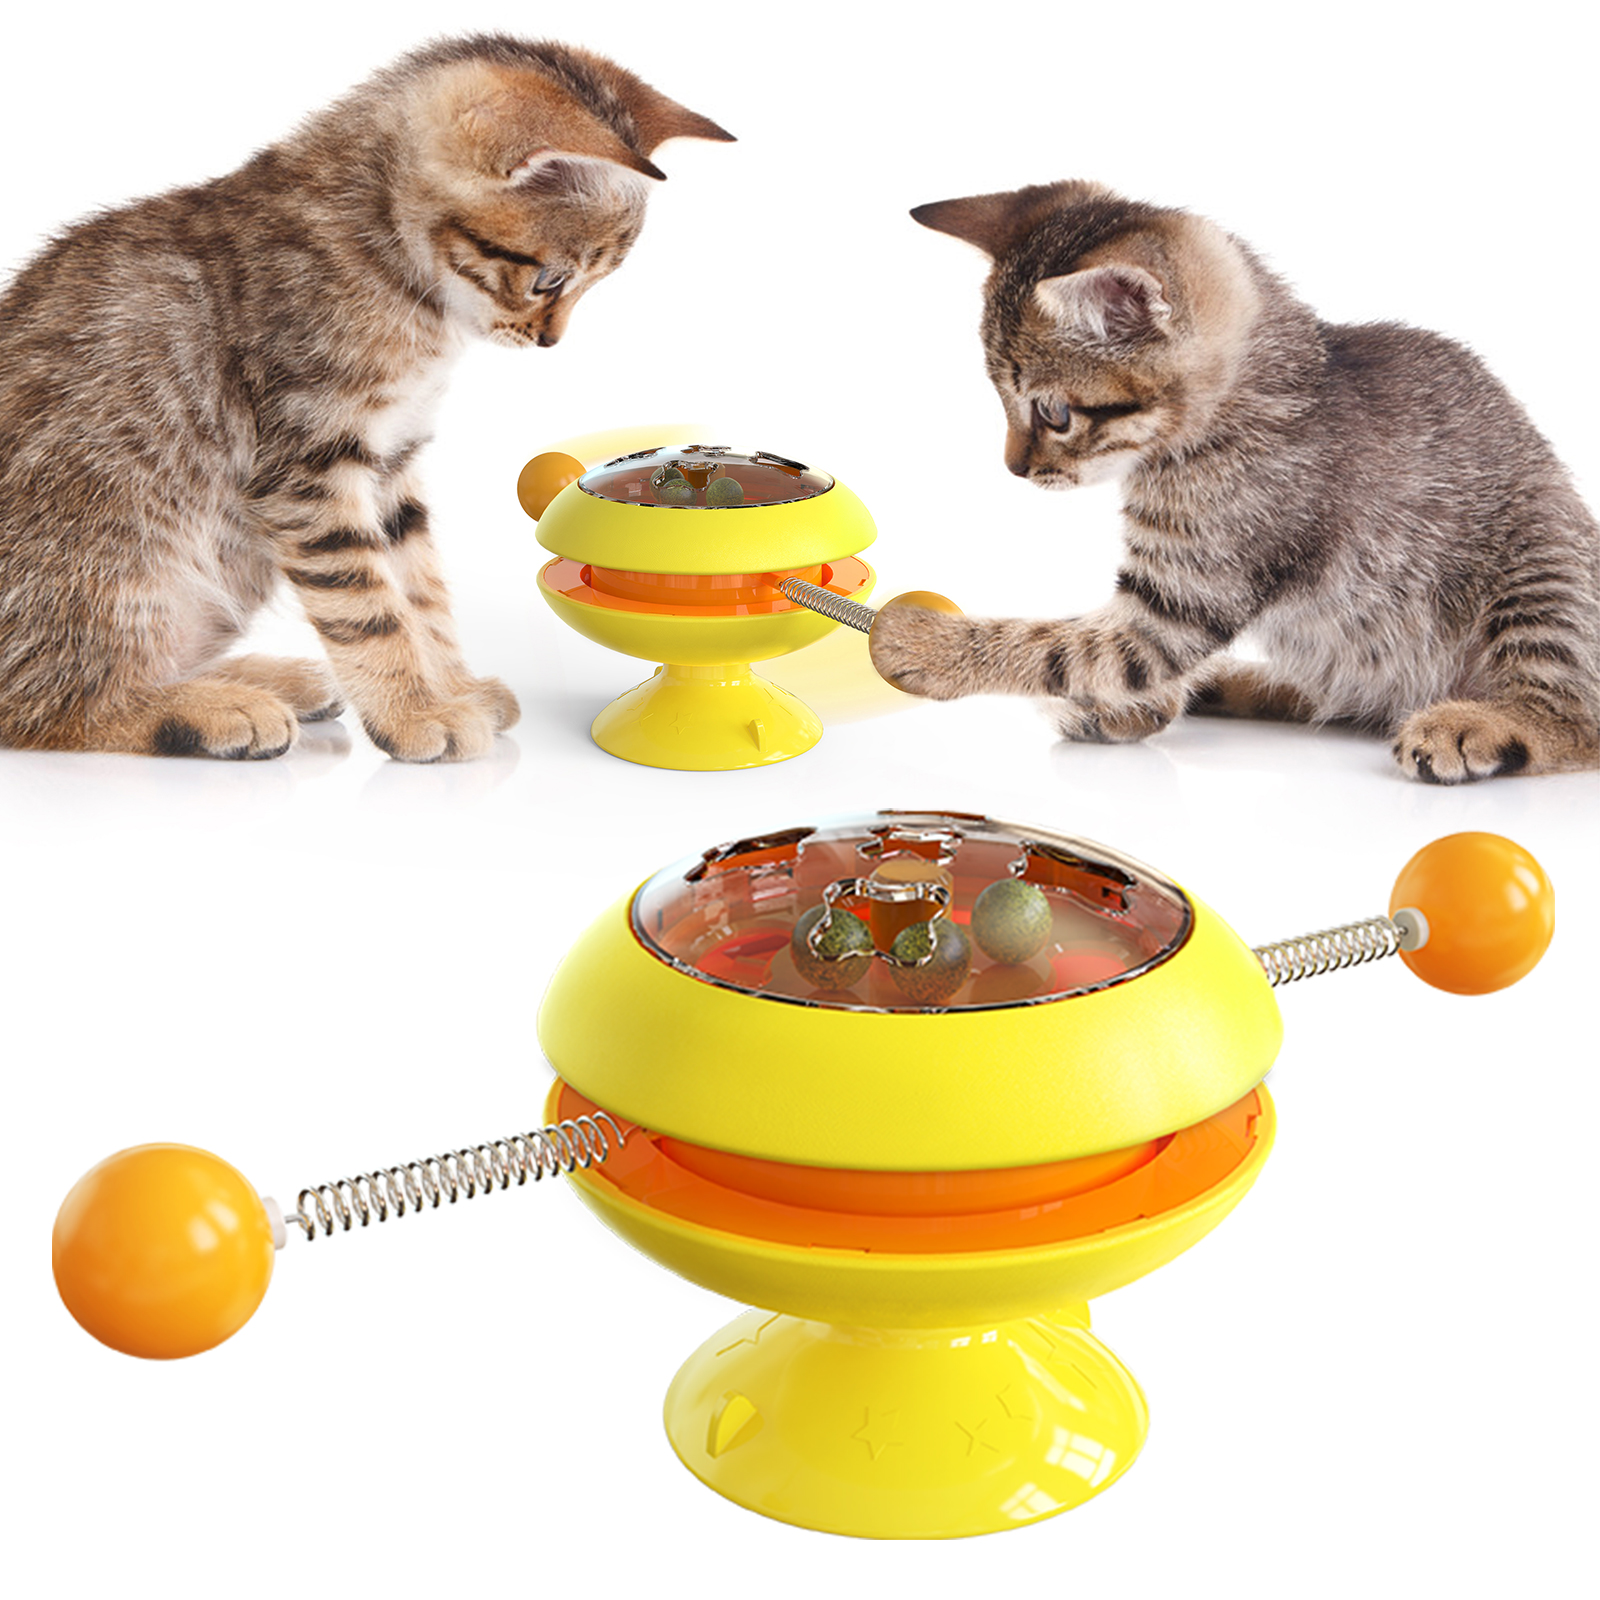 Bola rodante directa de fábrica que atrapa el juguete para gatos con ventosa tres en uno self-hey cat toy